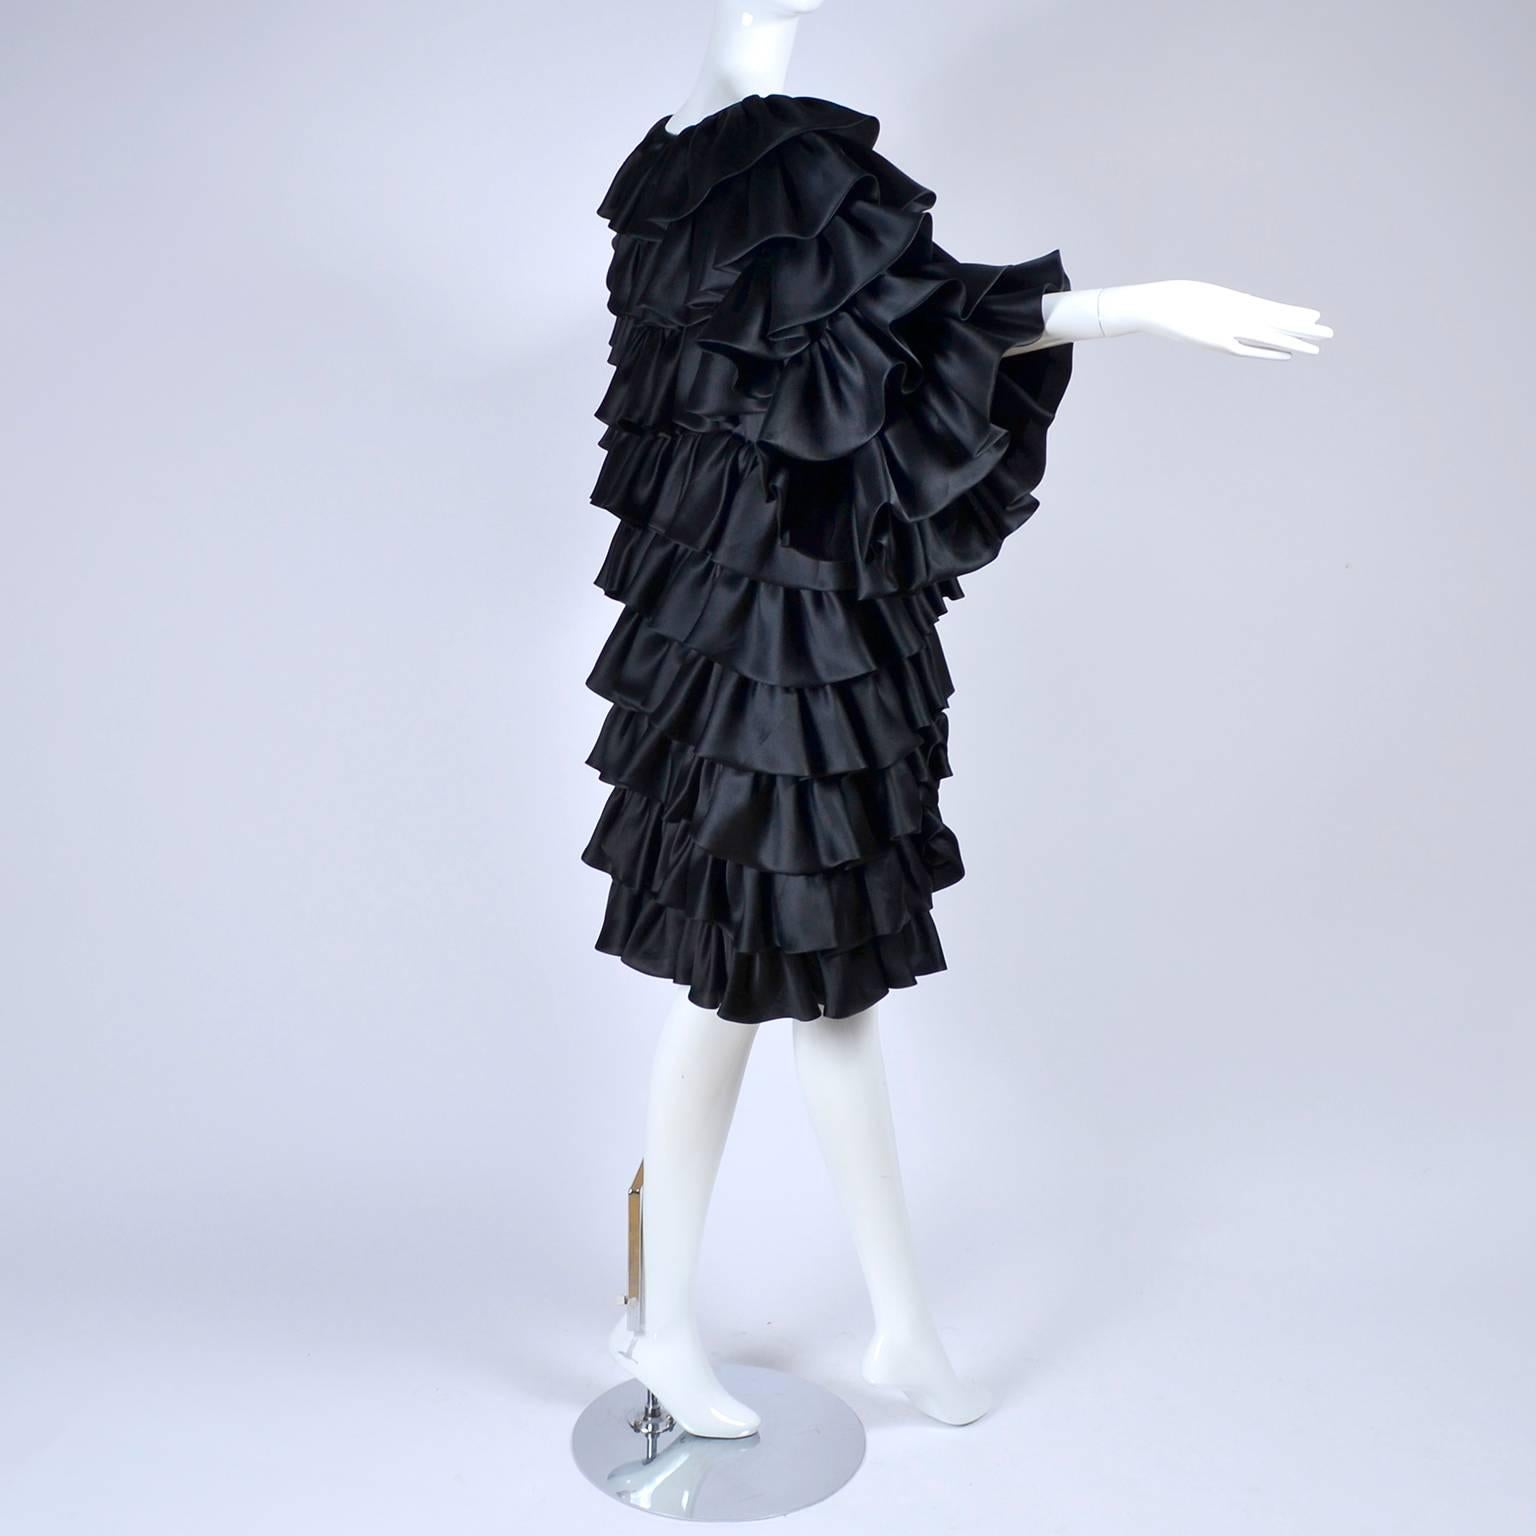 Women's Vintage Oscar de la Renta Silk Evening Coat with Black Ruffles Lined in Organza